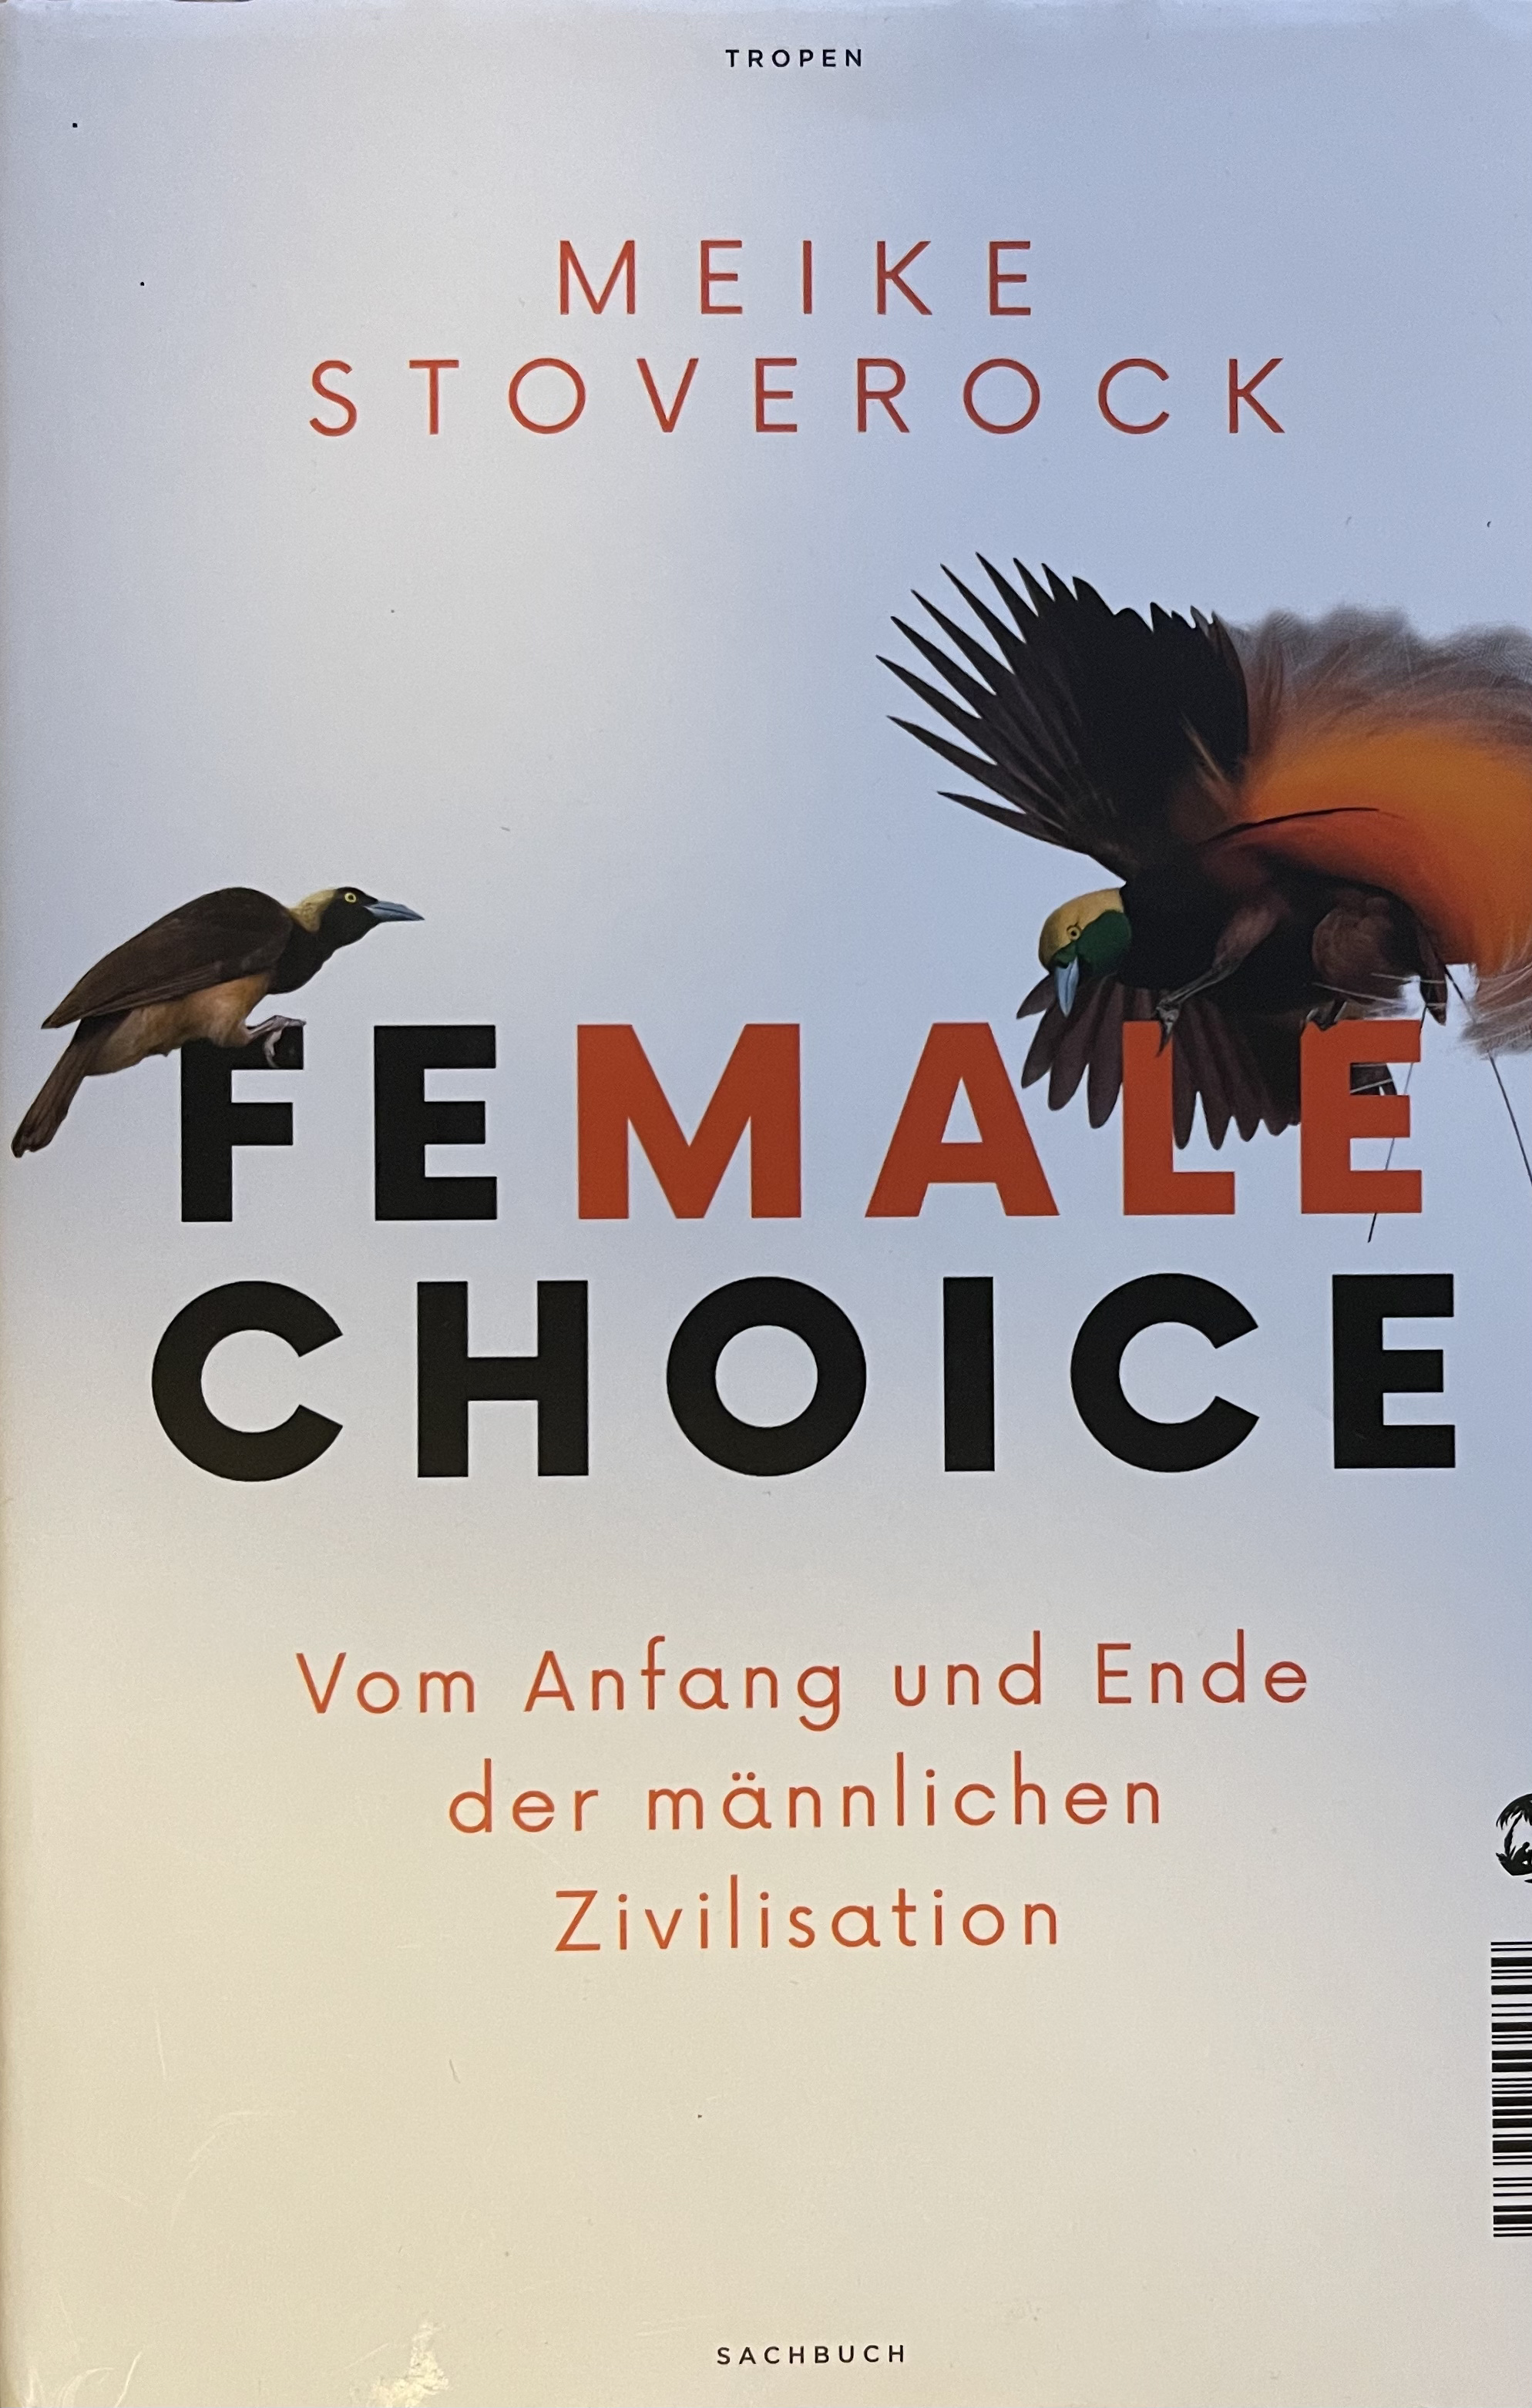 Female Choice (Deutsch language, Tropen)